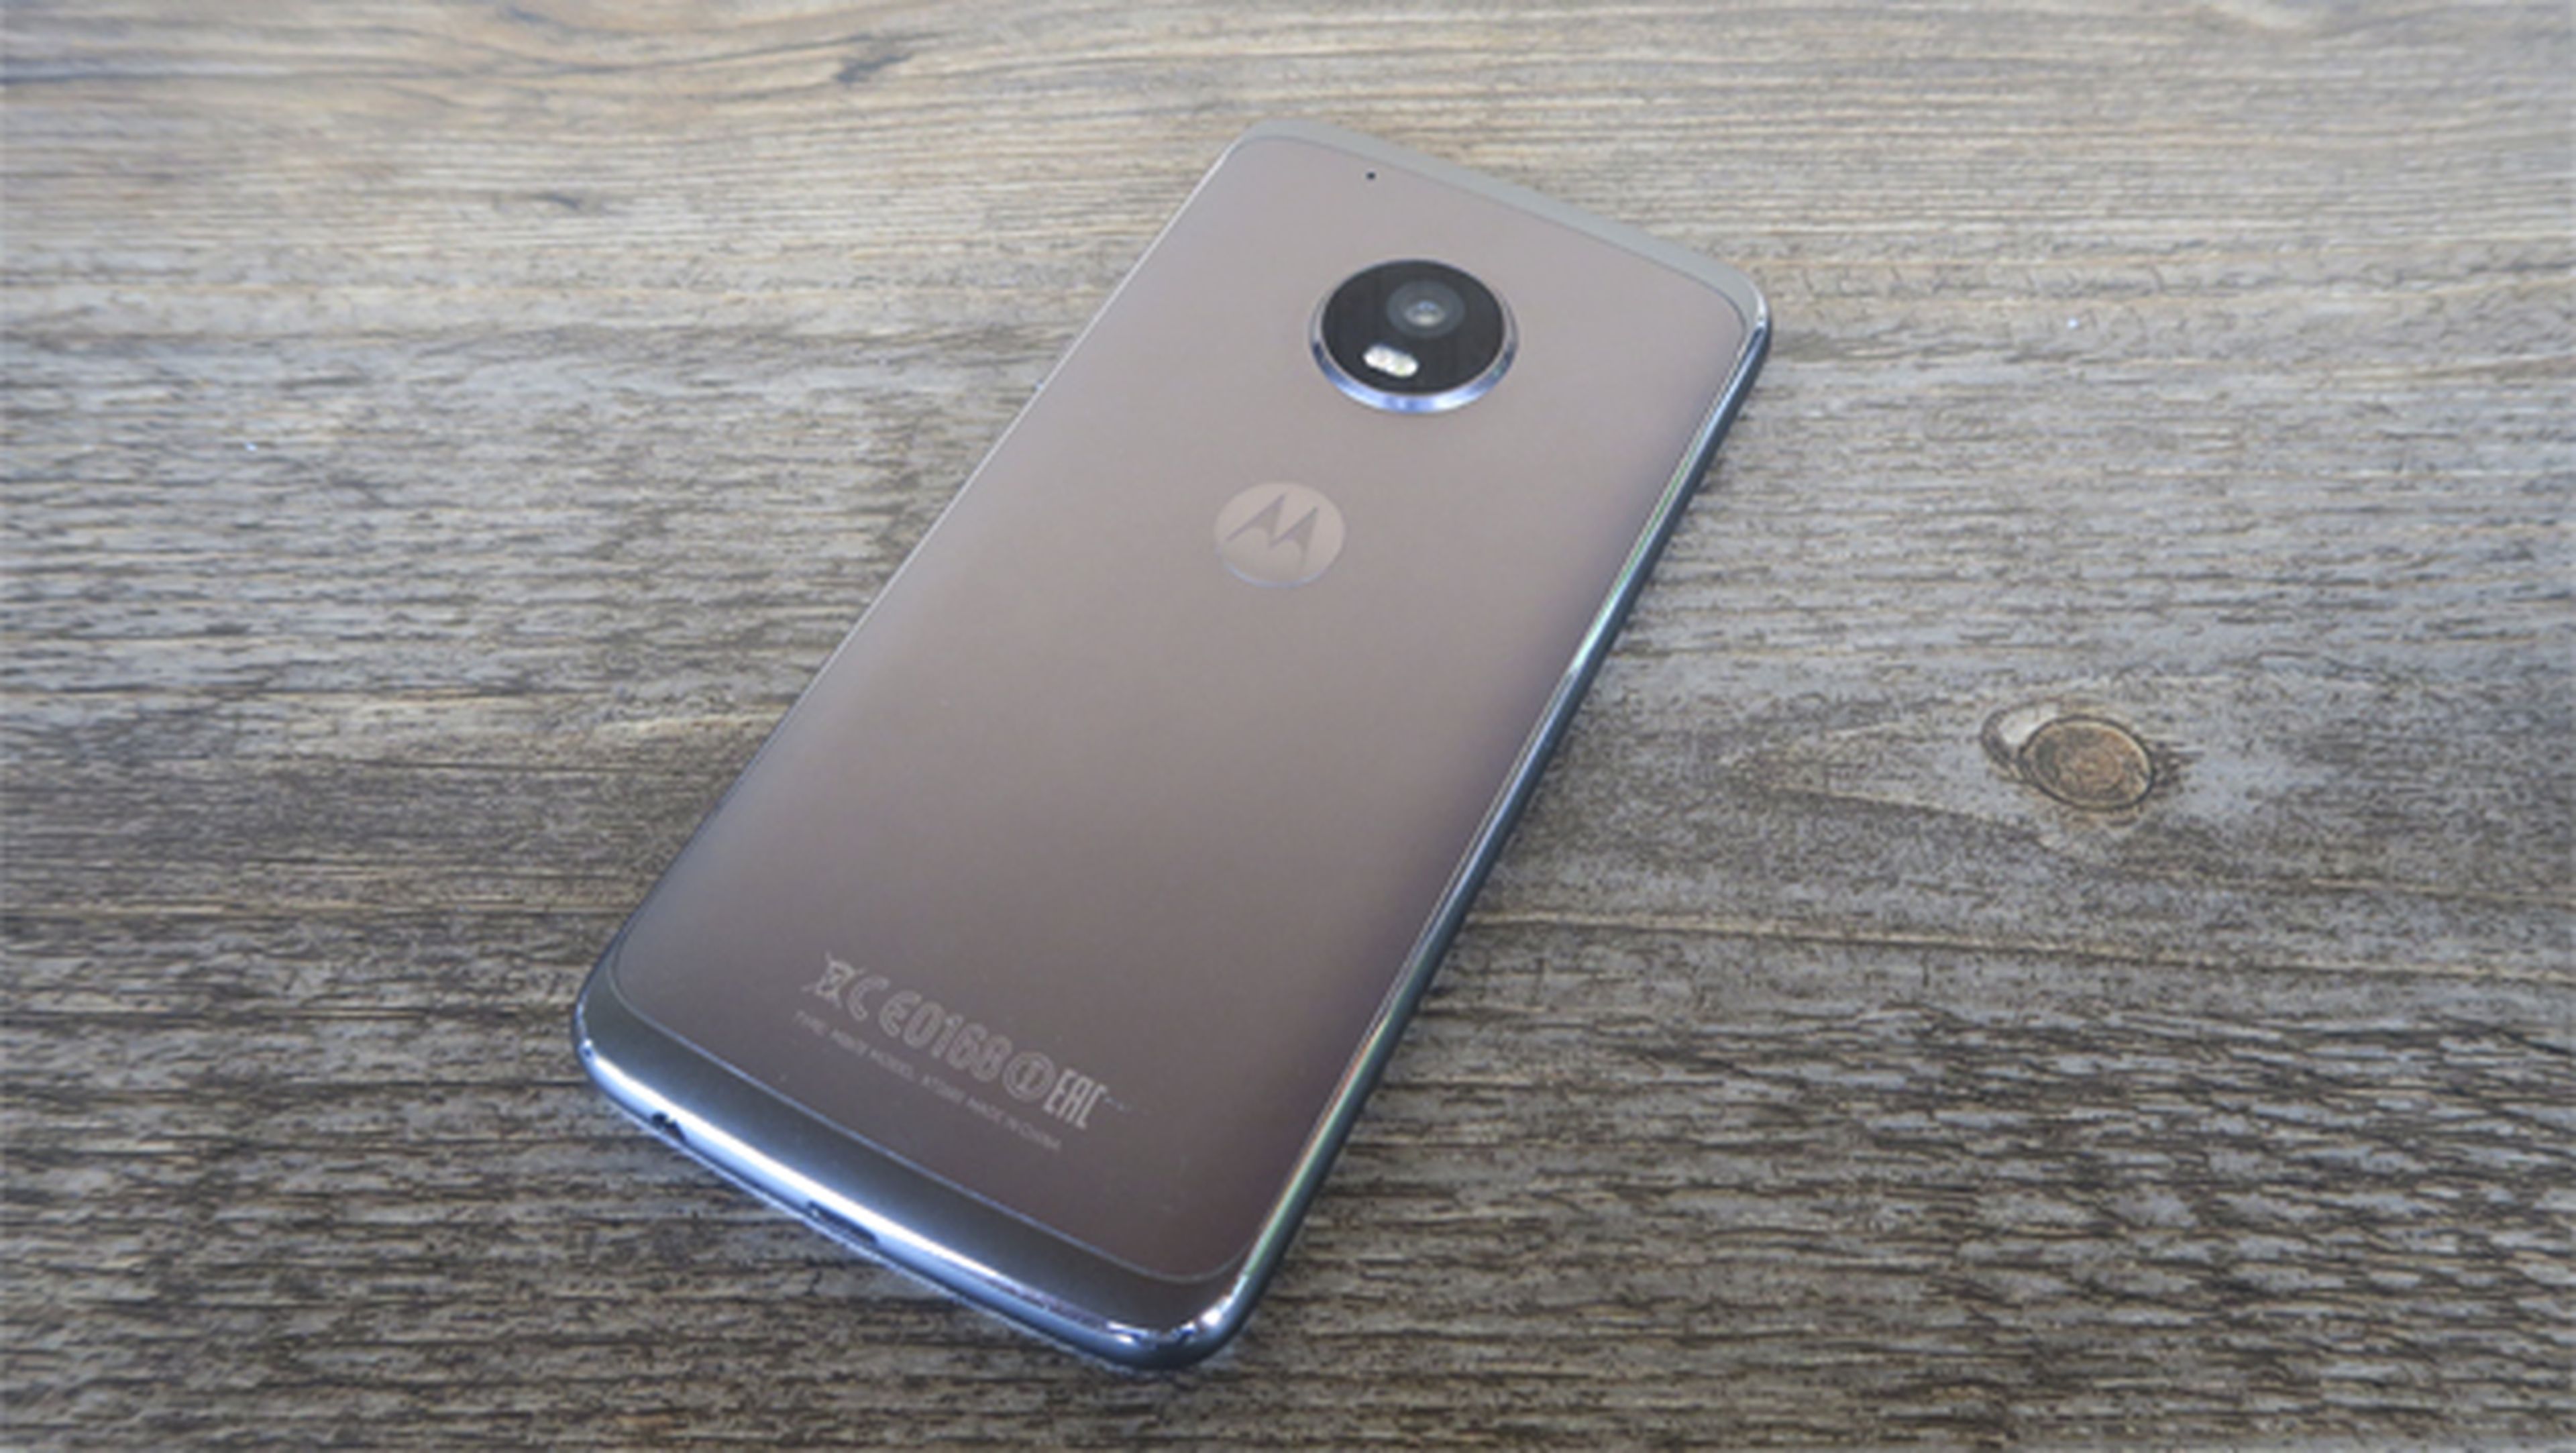 En este análisis del Moto G5 Plus daremos nuestras opiniones sobre la nueva gama media de Motorola